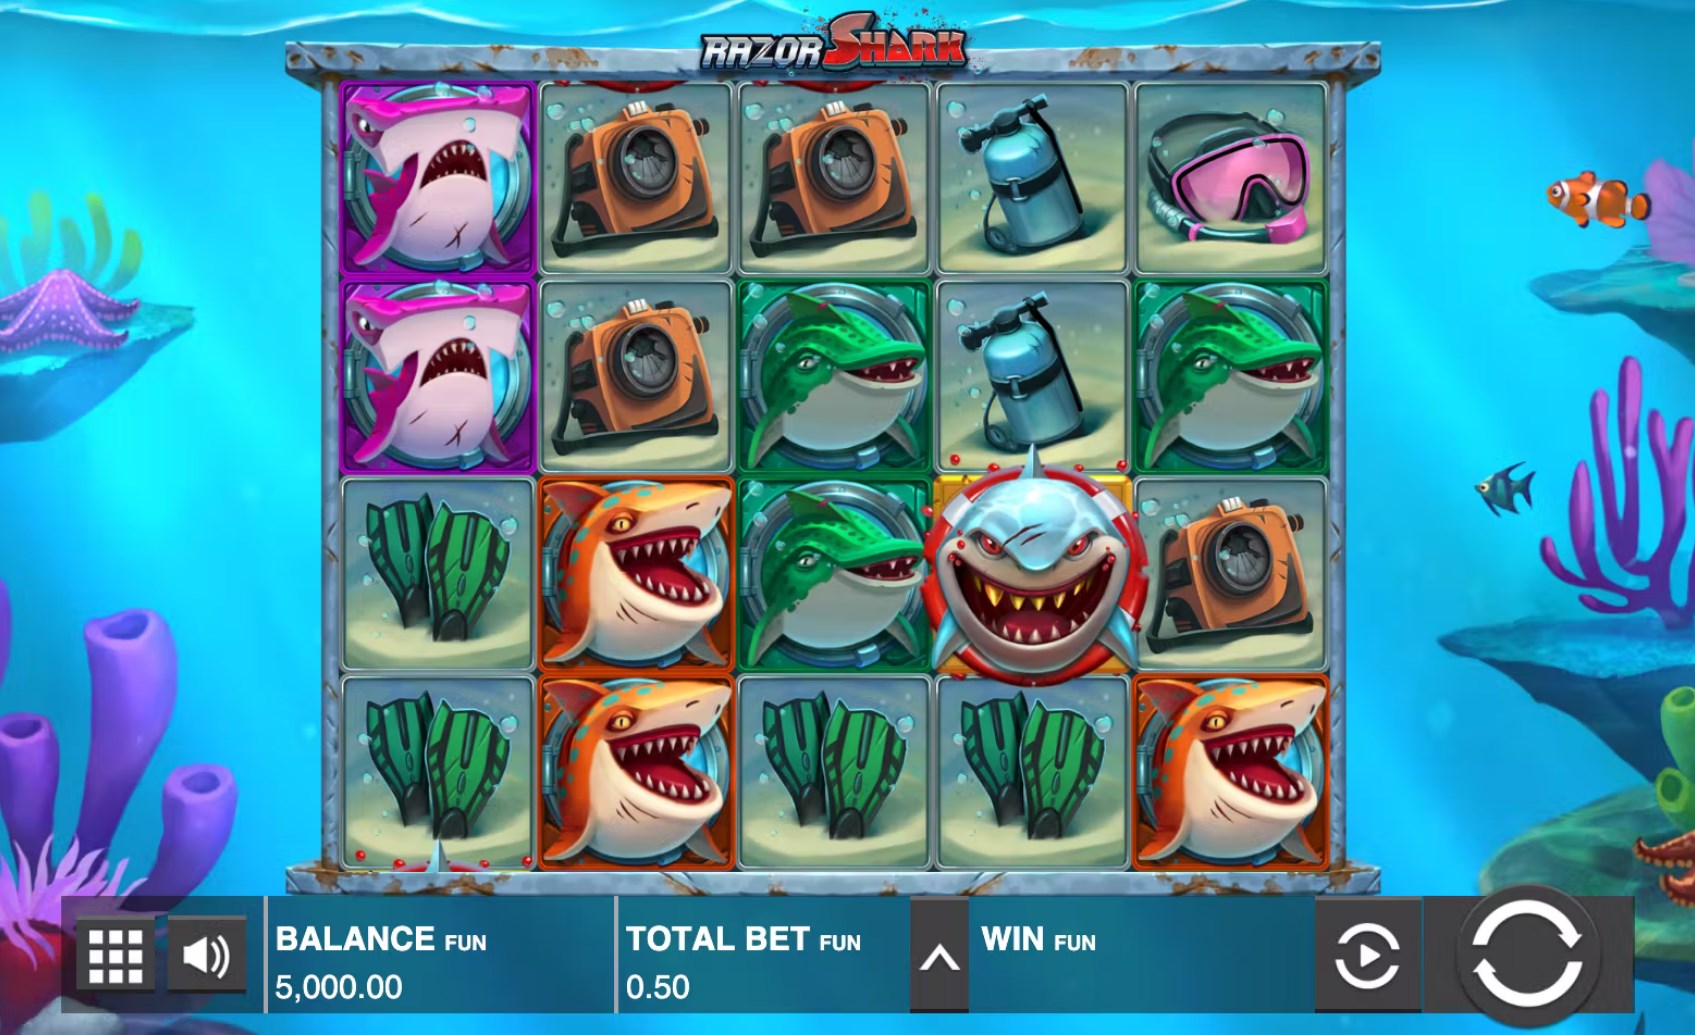 Razor Shark Slot Review [2023] - Mystery Stack Symbols!